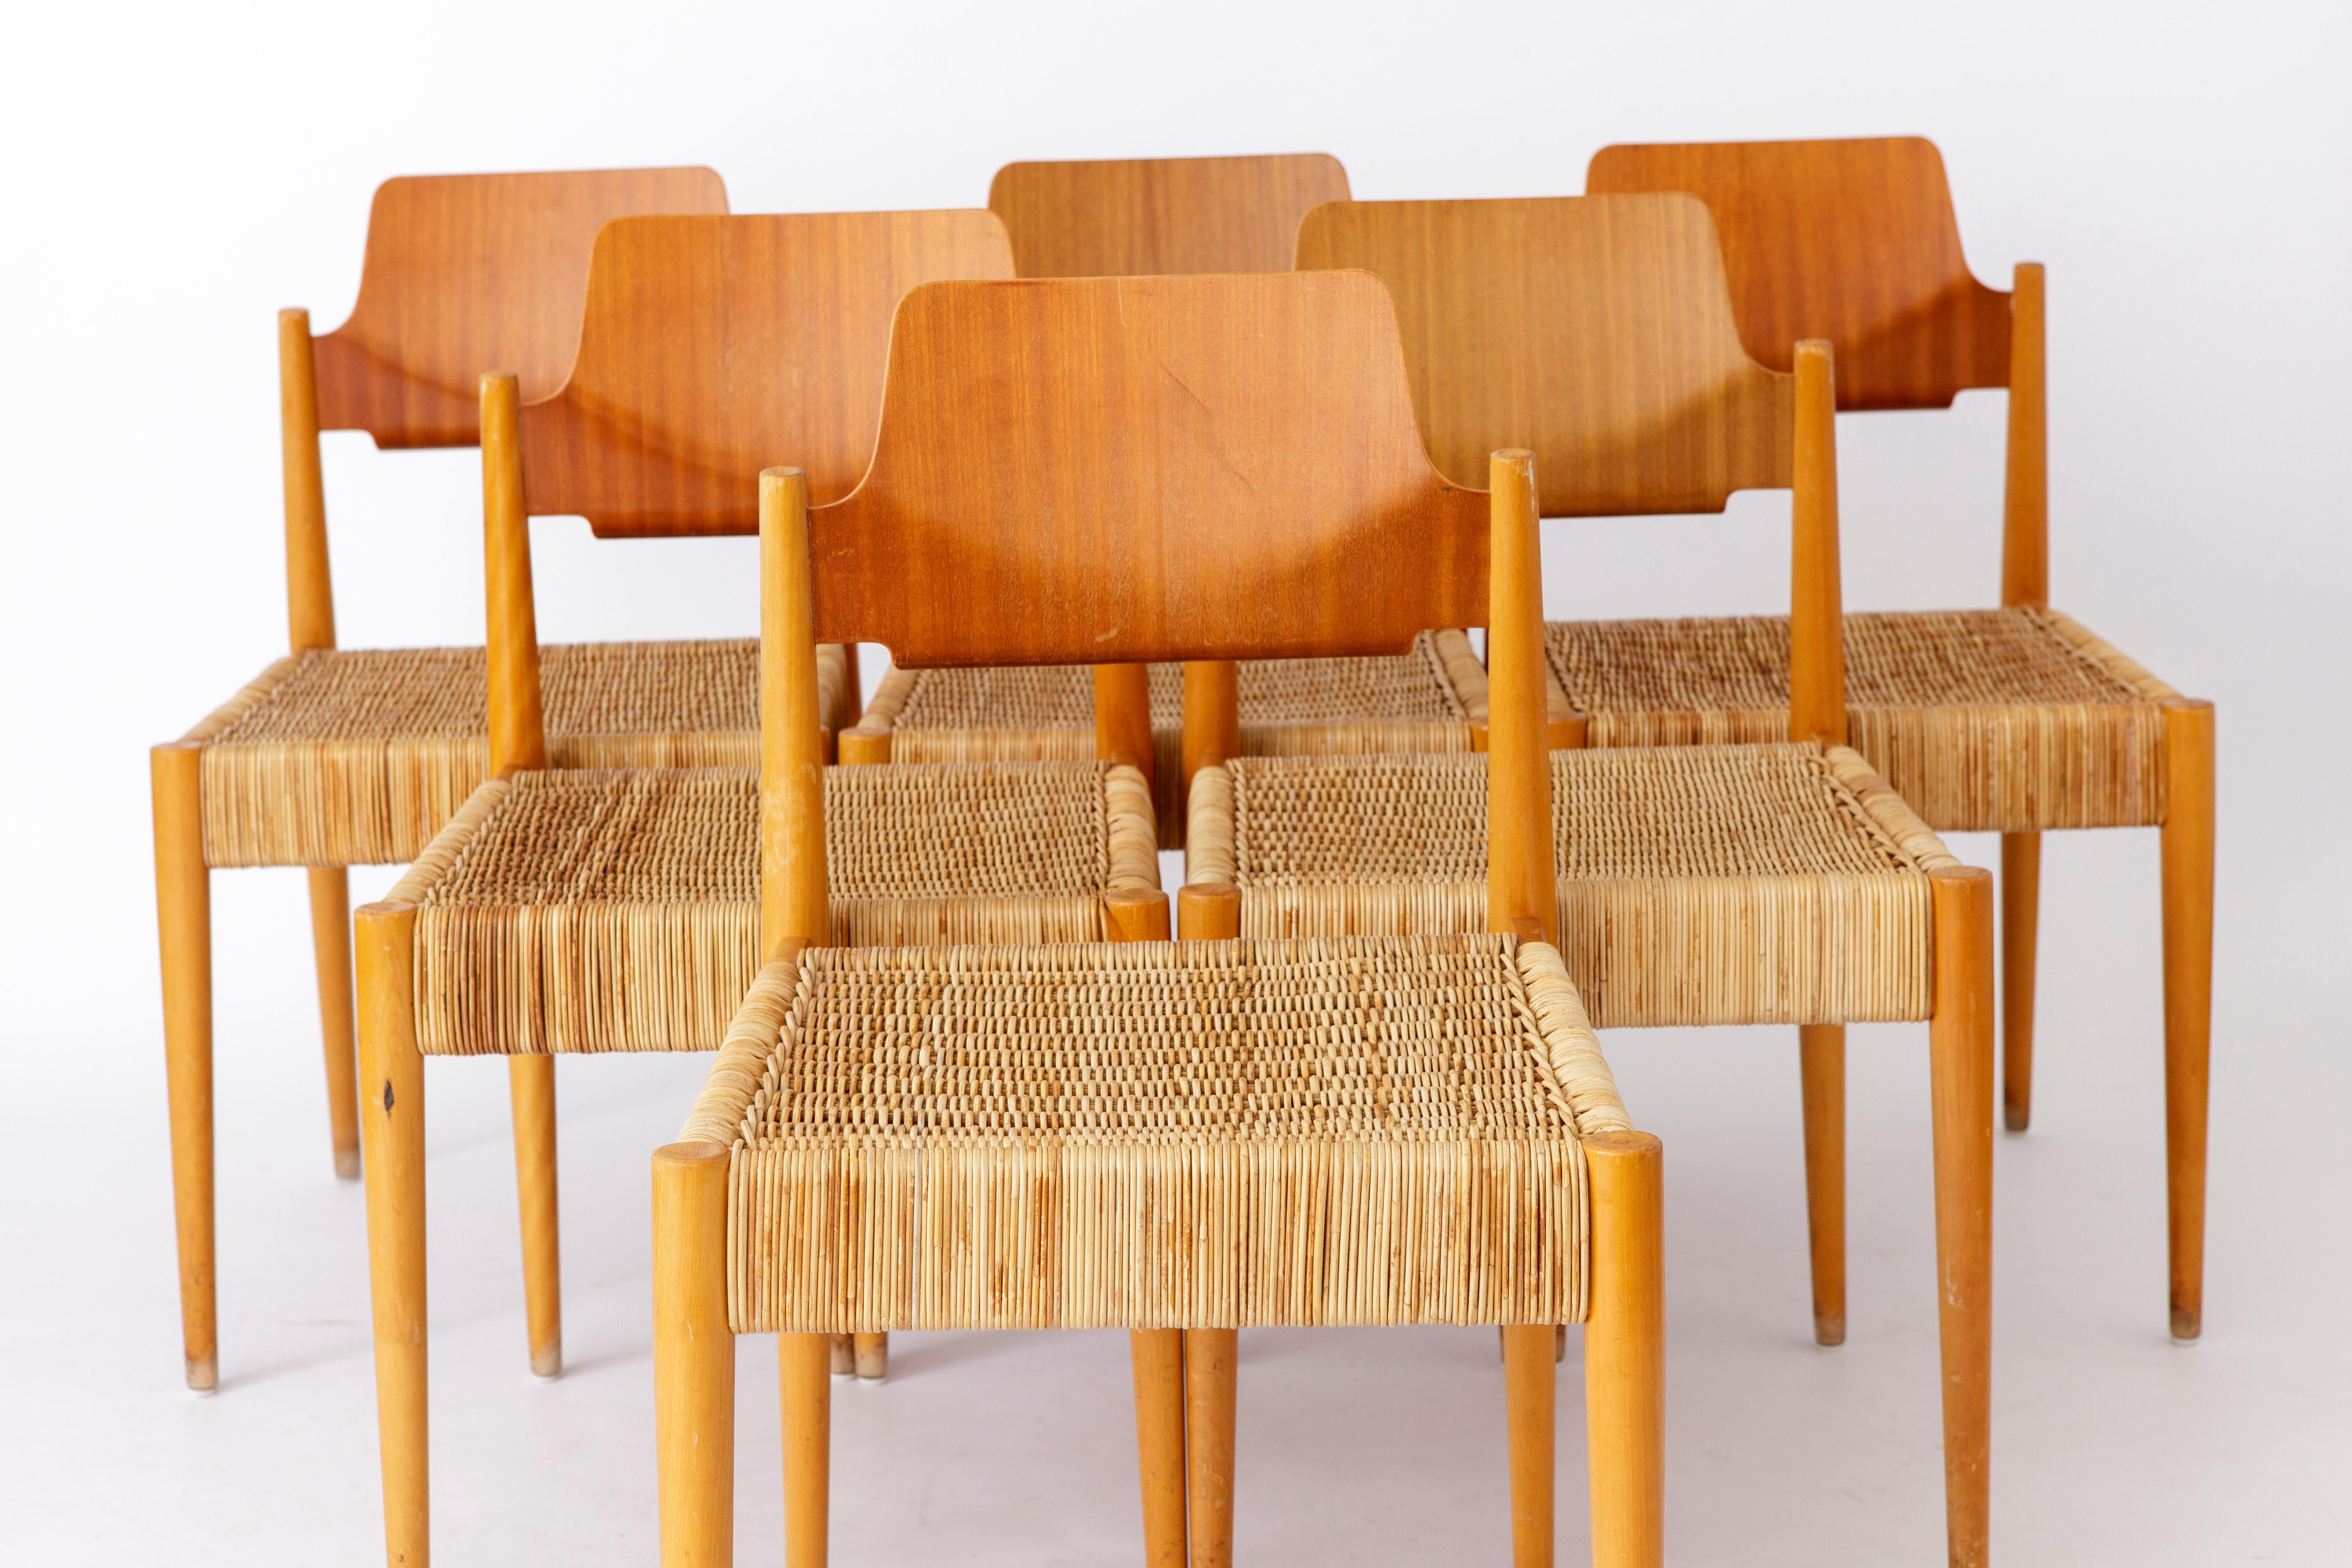 6 einzigartige Stühle vom deutschen Bauhaus-Designer Egon Eiermann für den Hersteller Wilde + Spieth. 
Modell: SE19 von 1953. 
Die Stühle wurden in einer alten Kirche verwendet und haben hinten ein Regal für ein Gesangbuch. 
Buchenholzrahmen in